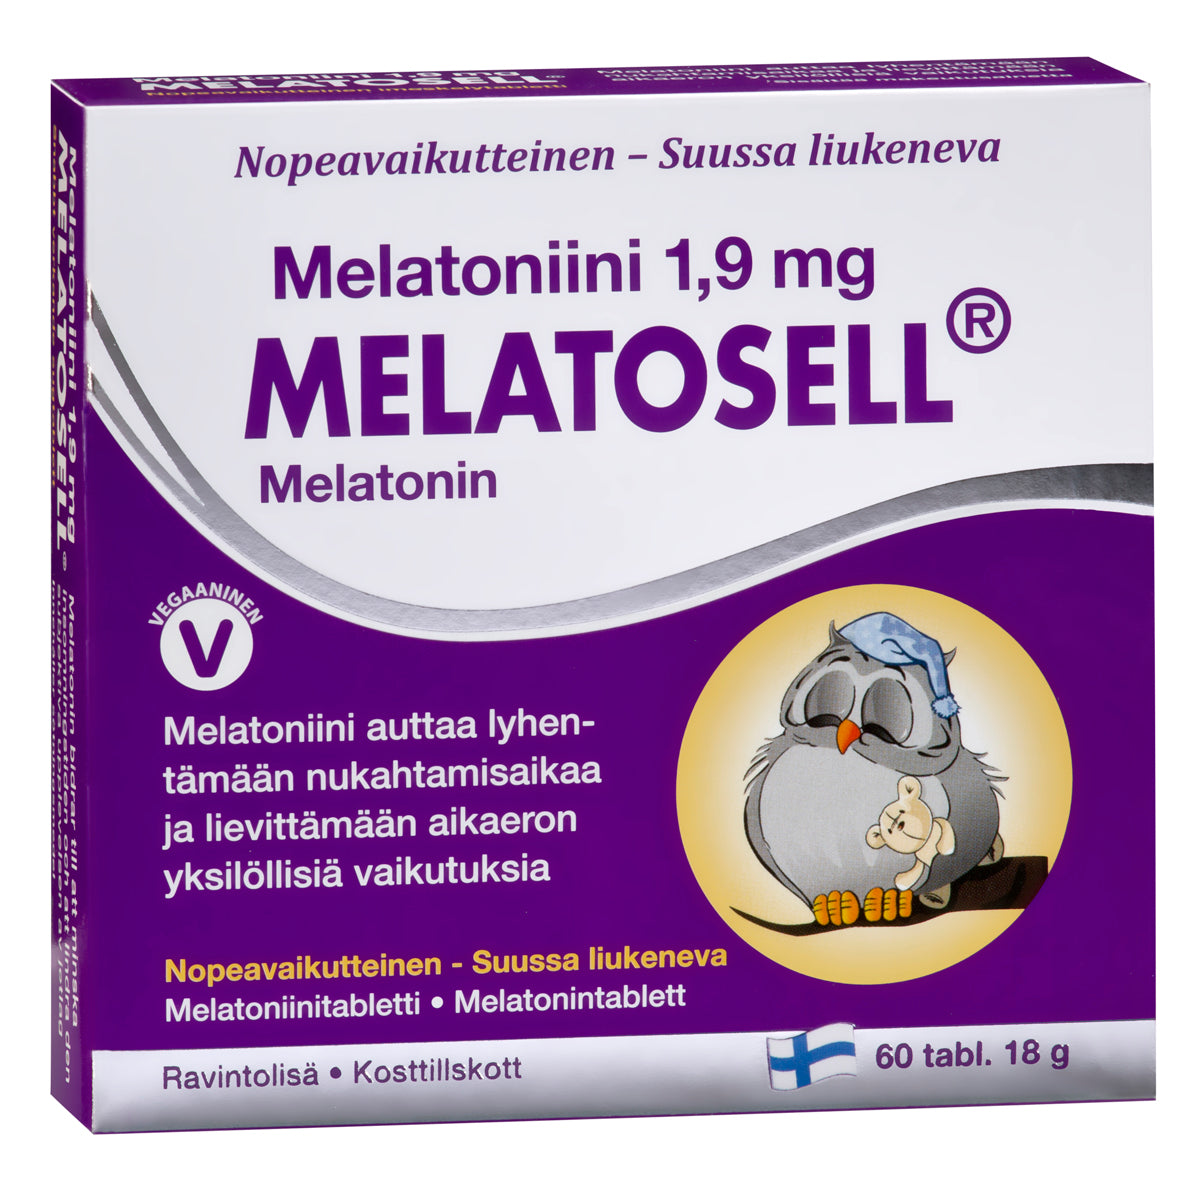 Melatosell Melatoniini 1,9 mg-Hankintatukku-Hyvinvoinnin Tavaratalo